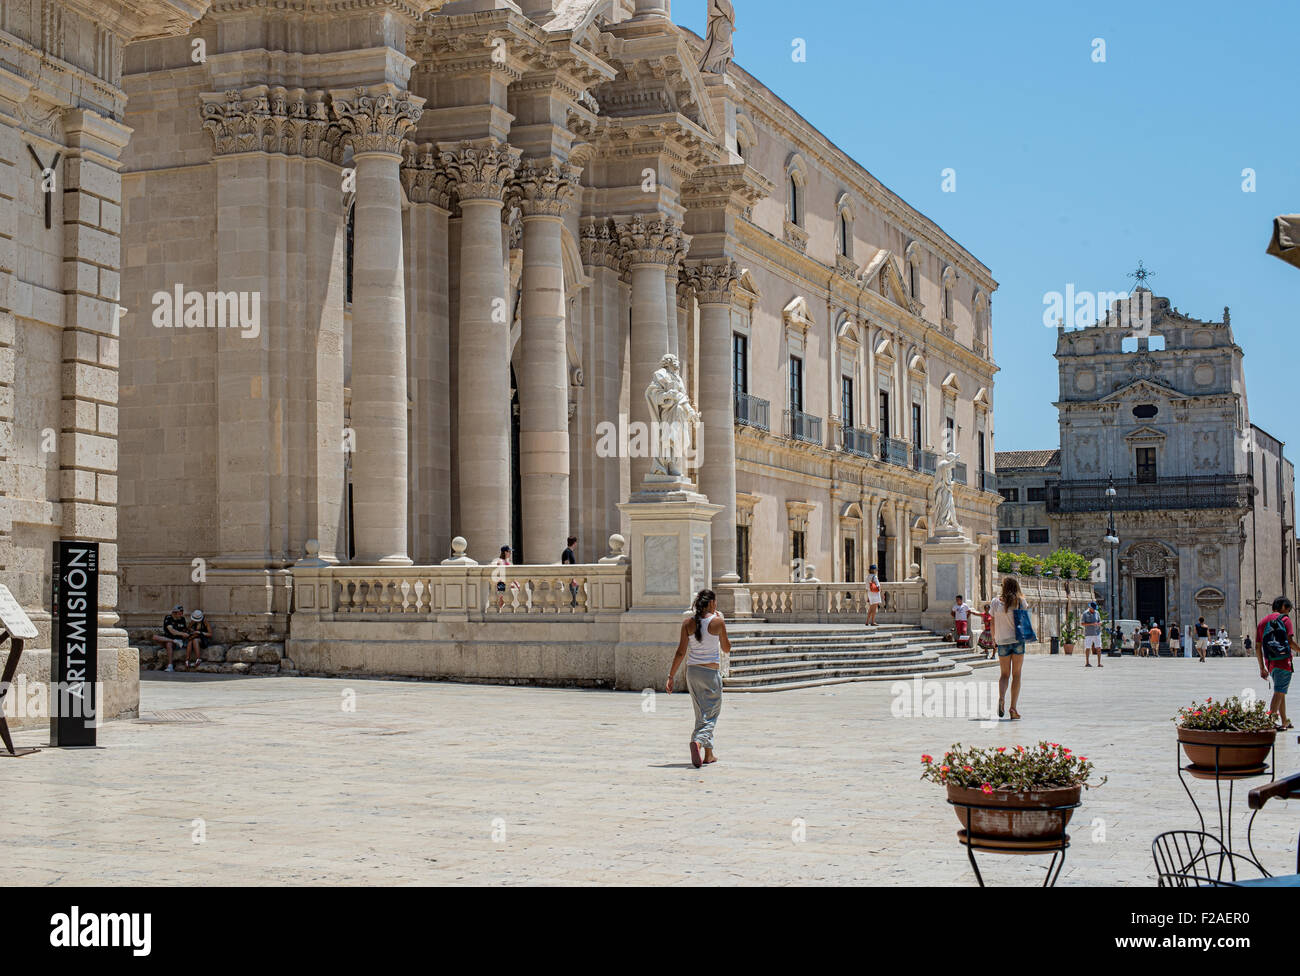 Fachada principal, de estilo barroco, de la Catedral de Siracusa en la plaza Piazza del Duomo en Ortigia Siracusa. Sicilia, Italia. Foto de stock